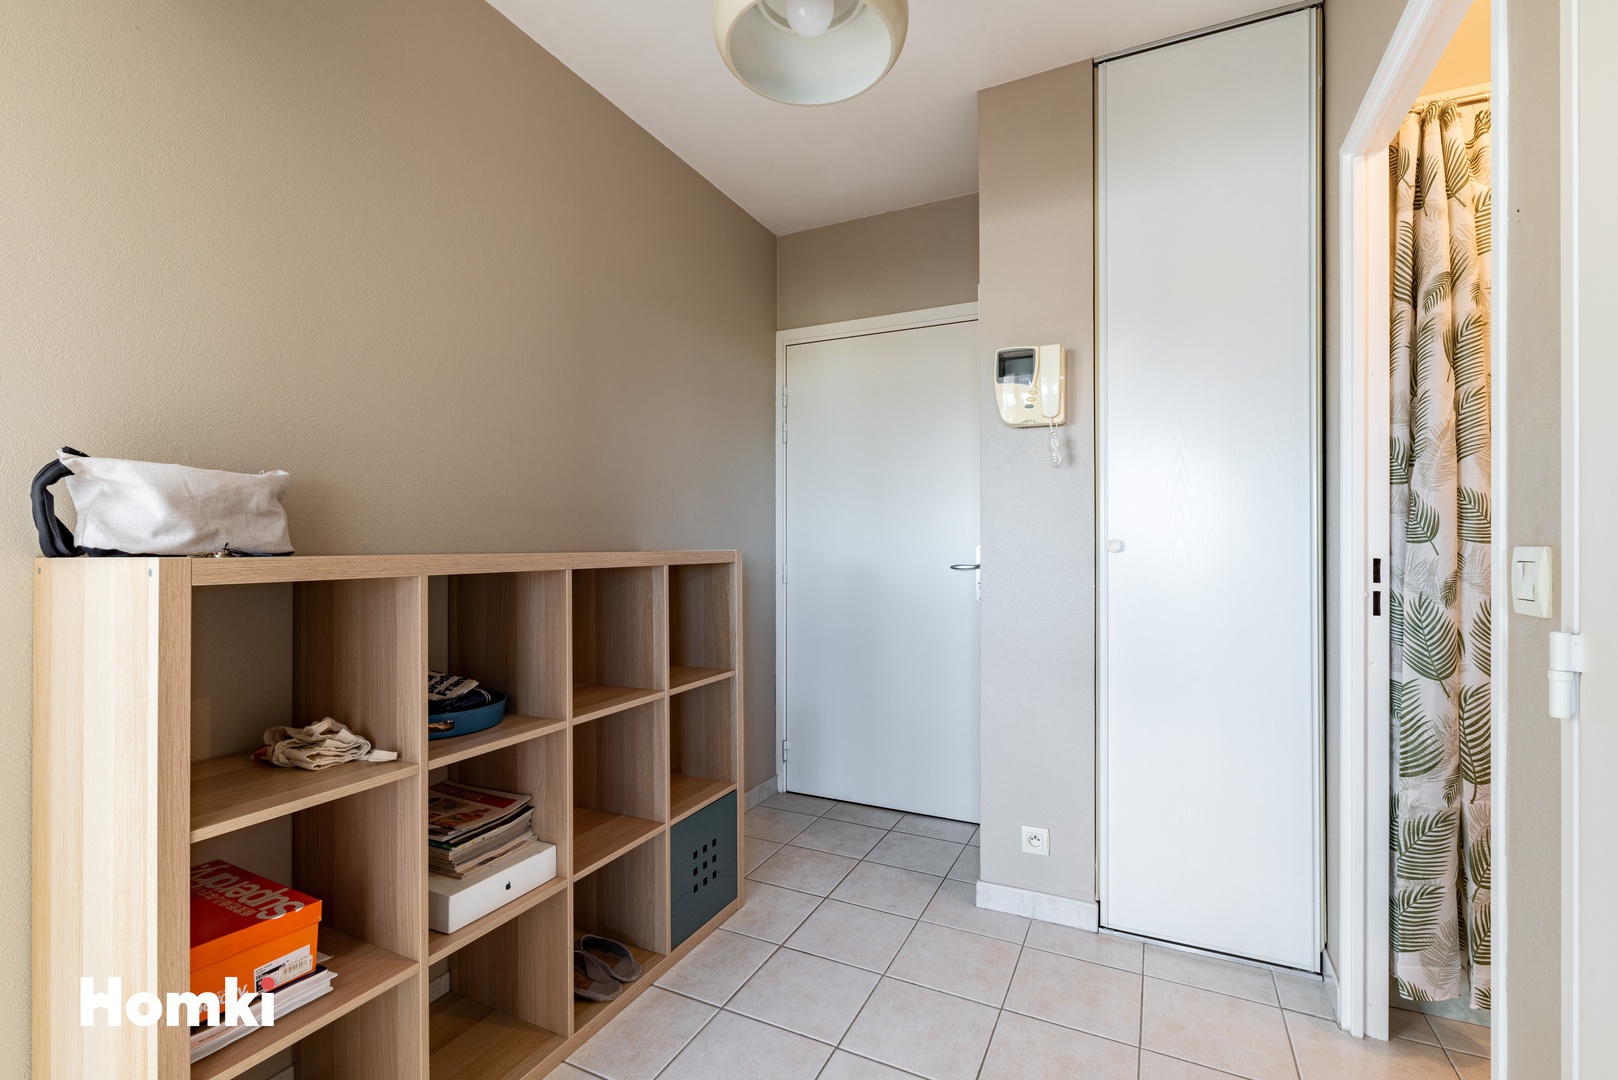 Homki - Vente Appartement  de 42.0 m² à Montpellier 34000